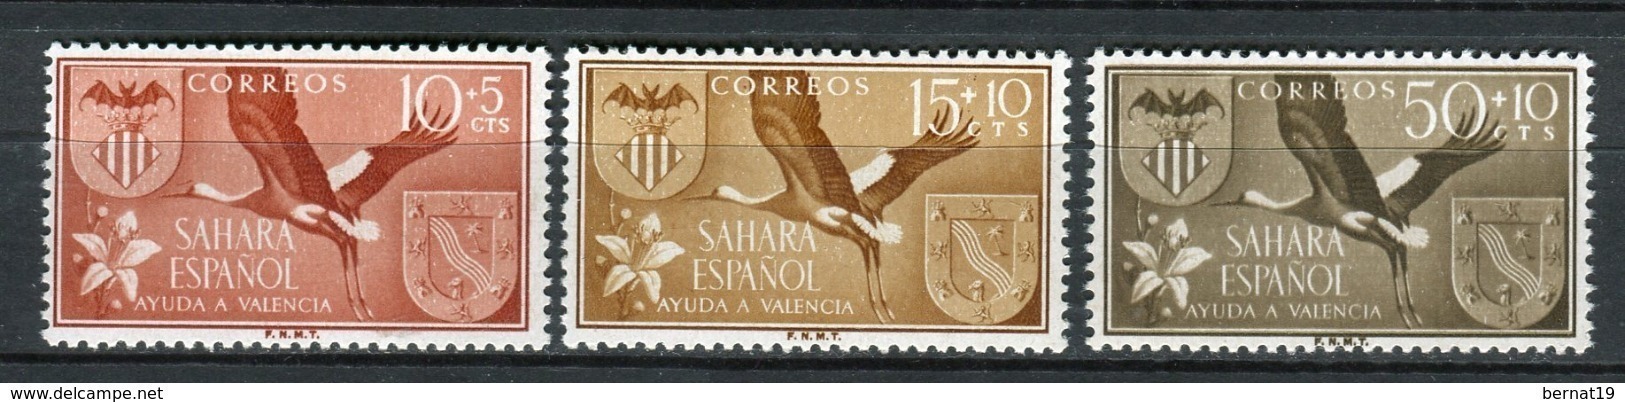 Sahara 1958. Edifil 146-48 ** MNH. - Spanische Sahara